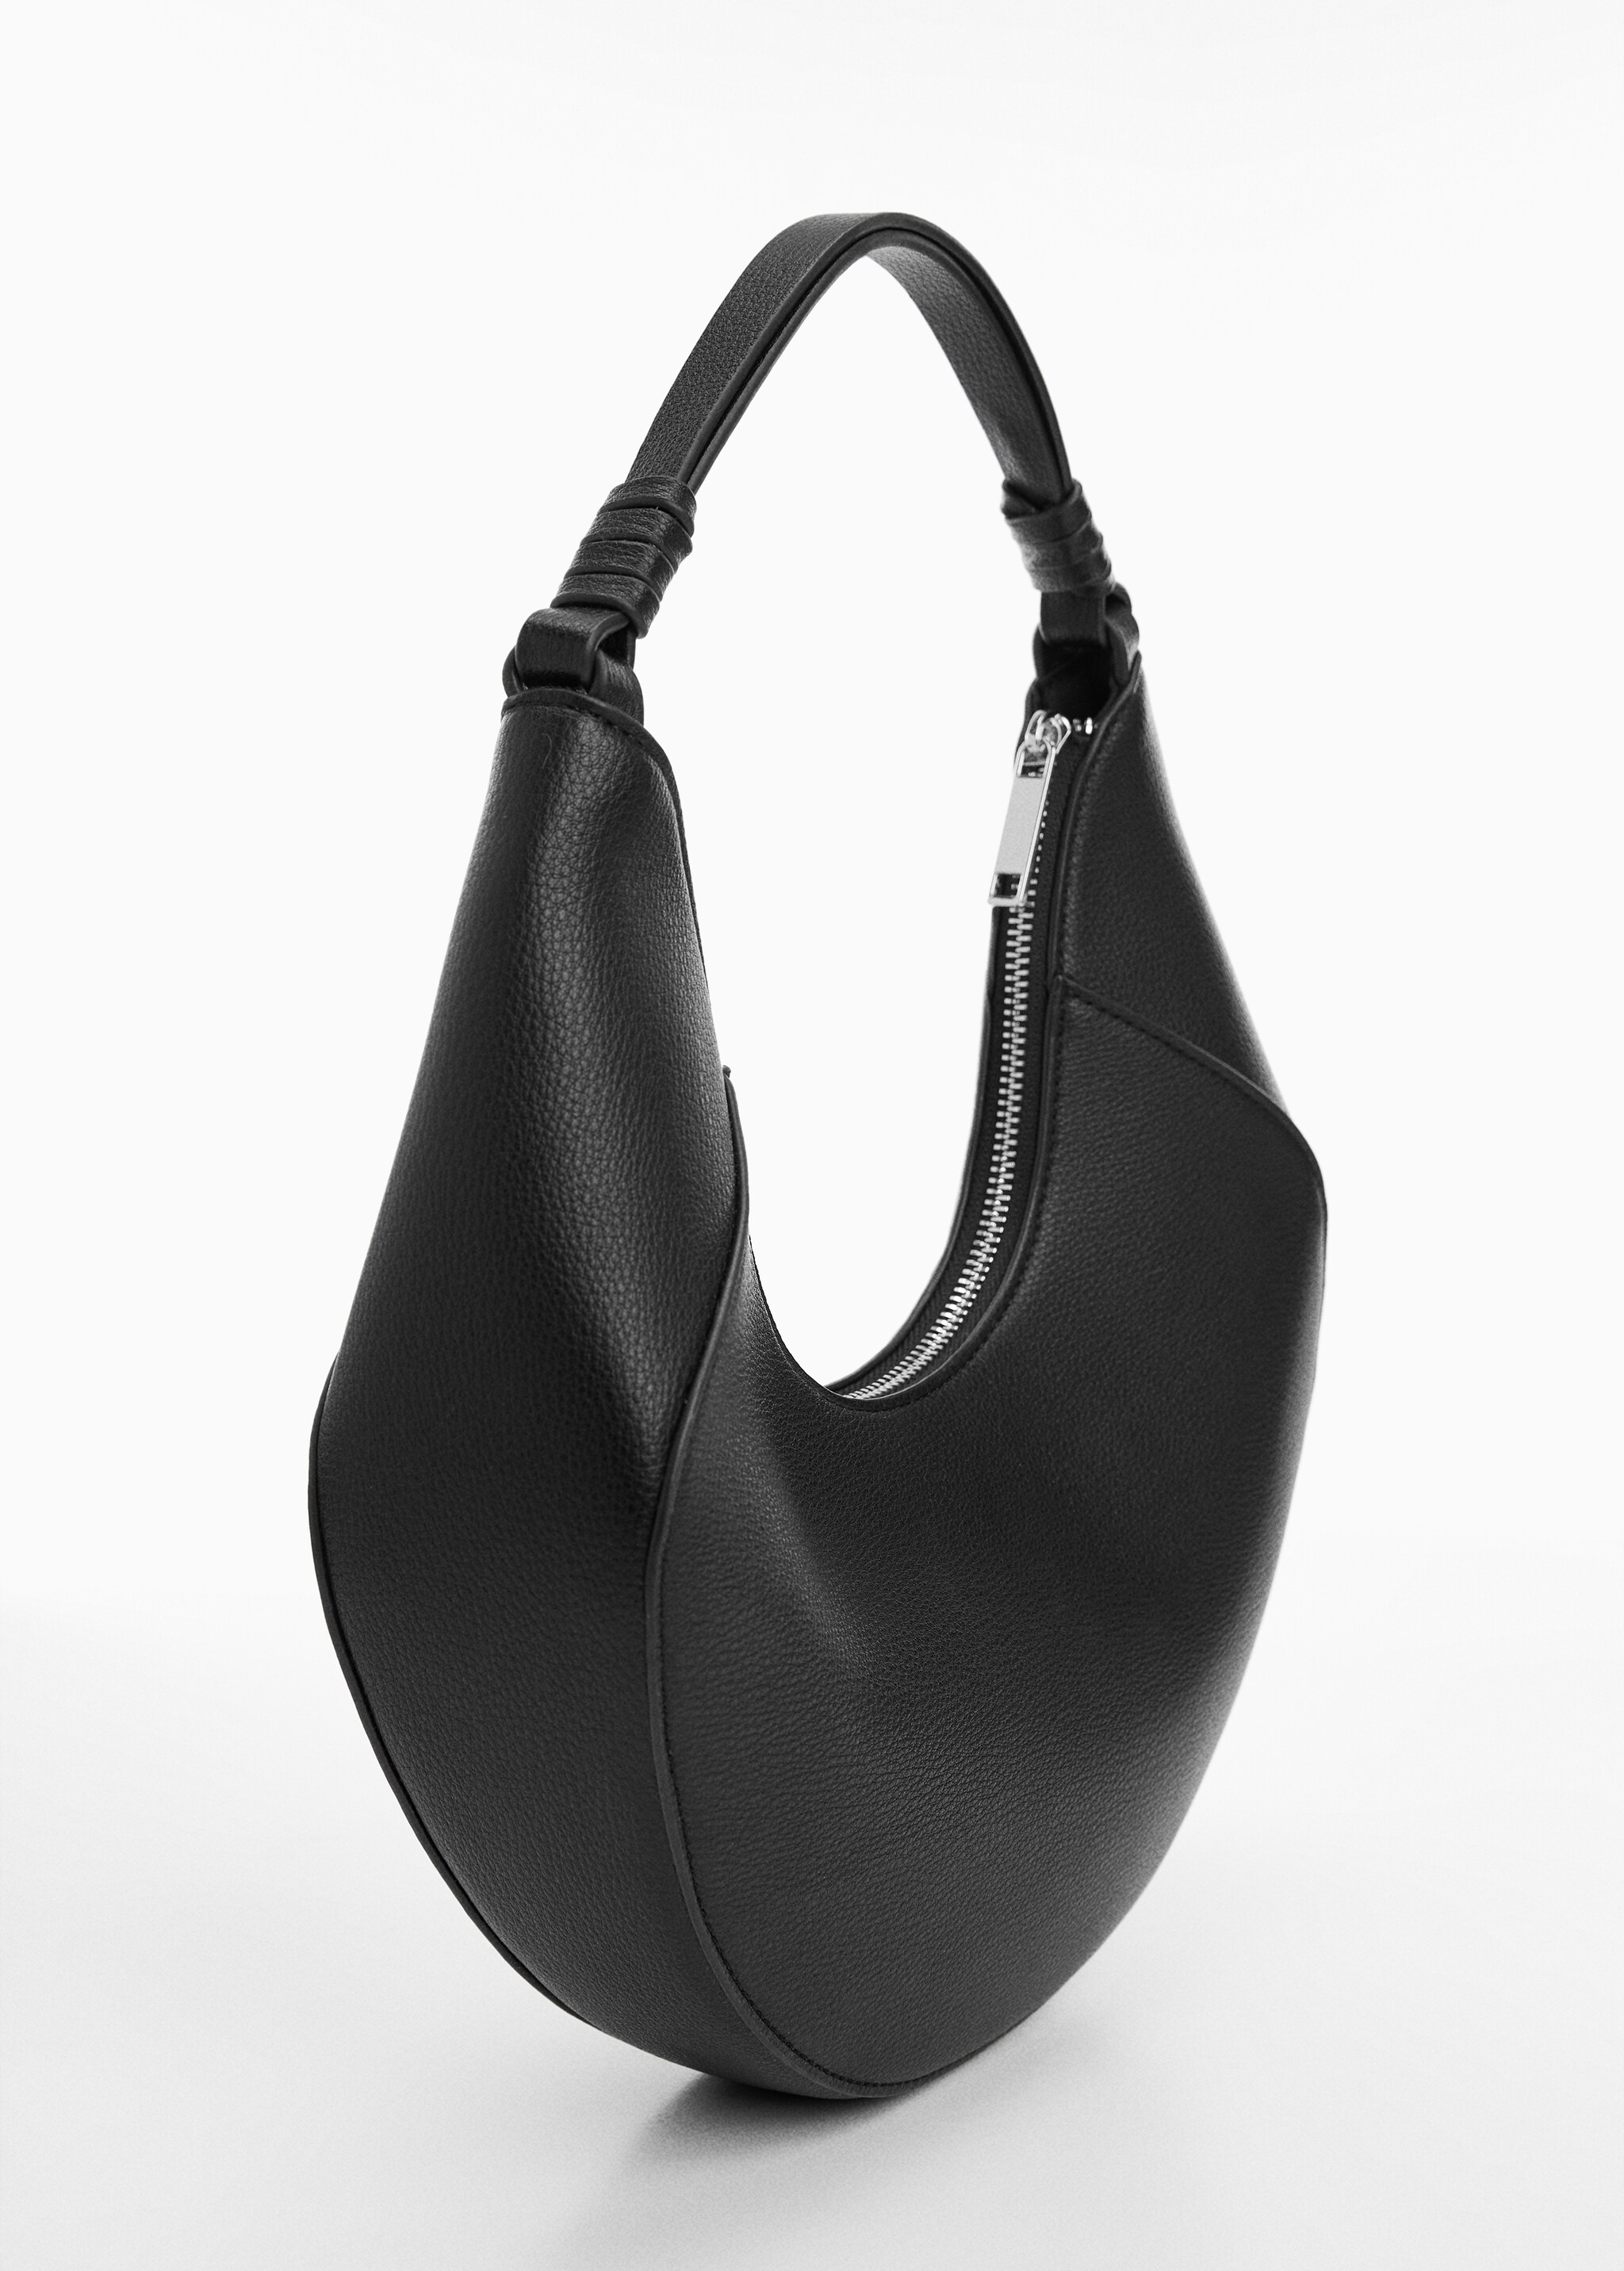 Leather-effect shoulder bag - Medium plane